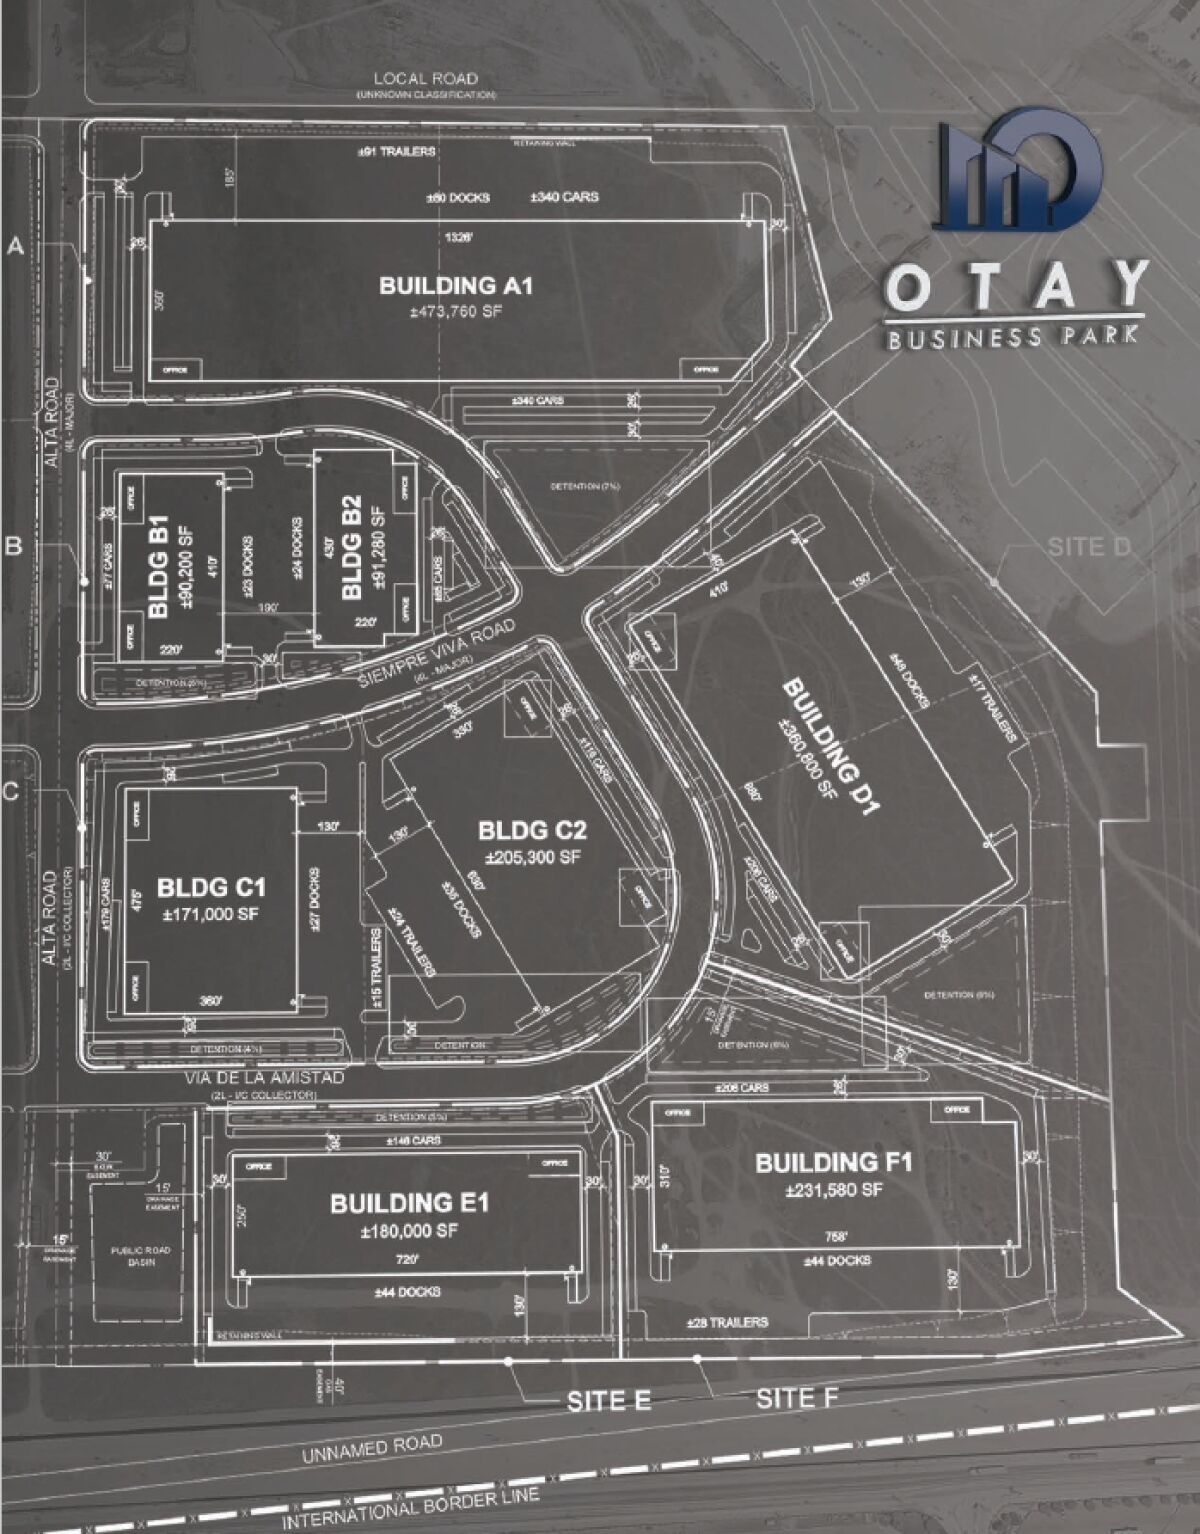 El Otay Business Park tendrá 1.8 millones de pies cuadrados de espacio industrial en Otay Mesa.